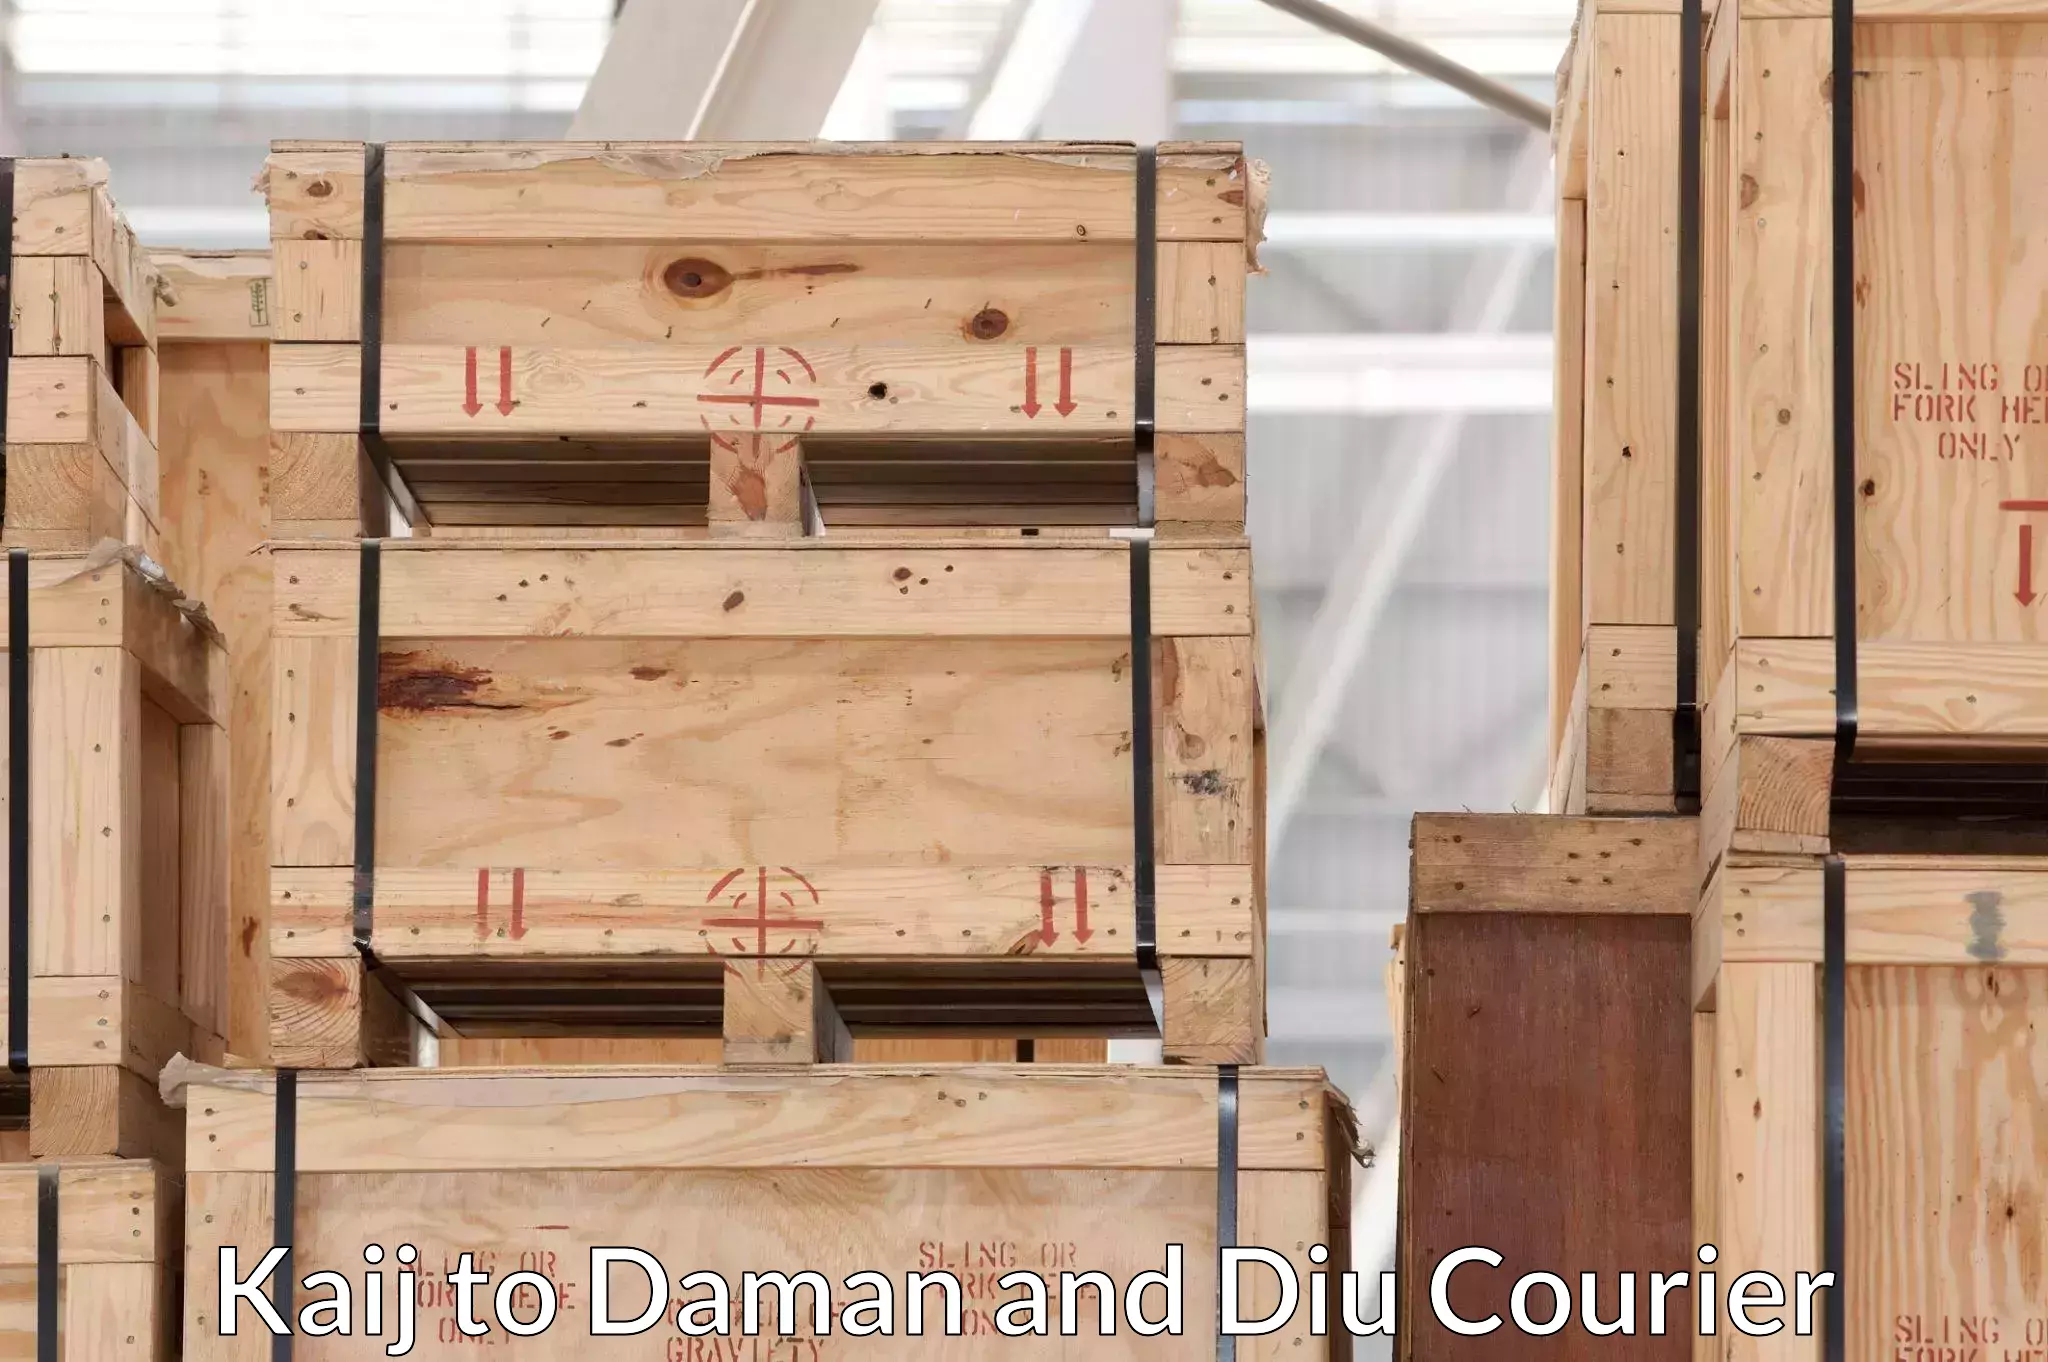 Furniture moving experts Kaij to Daman